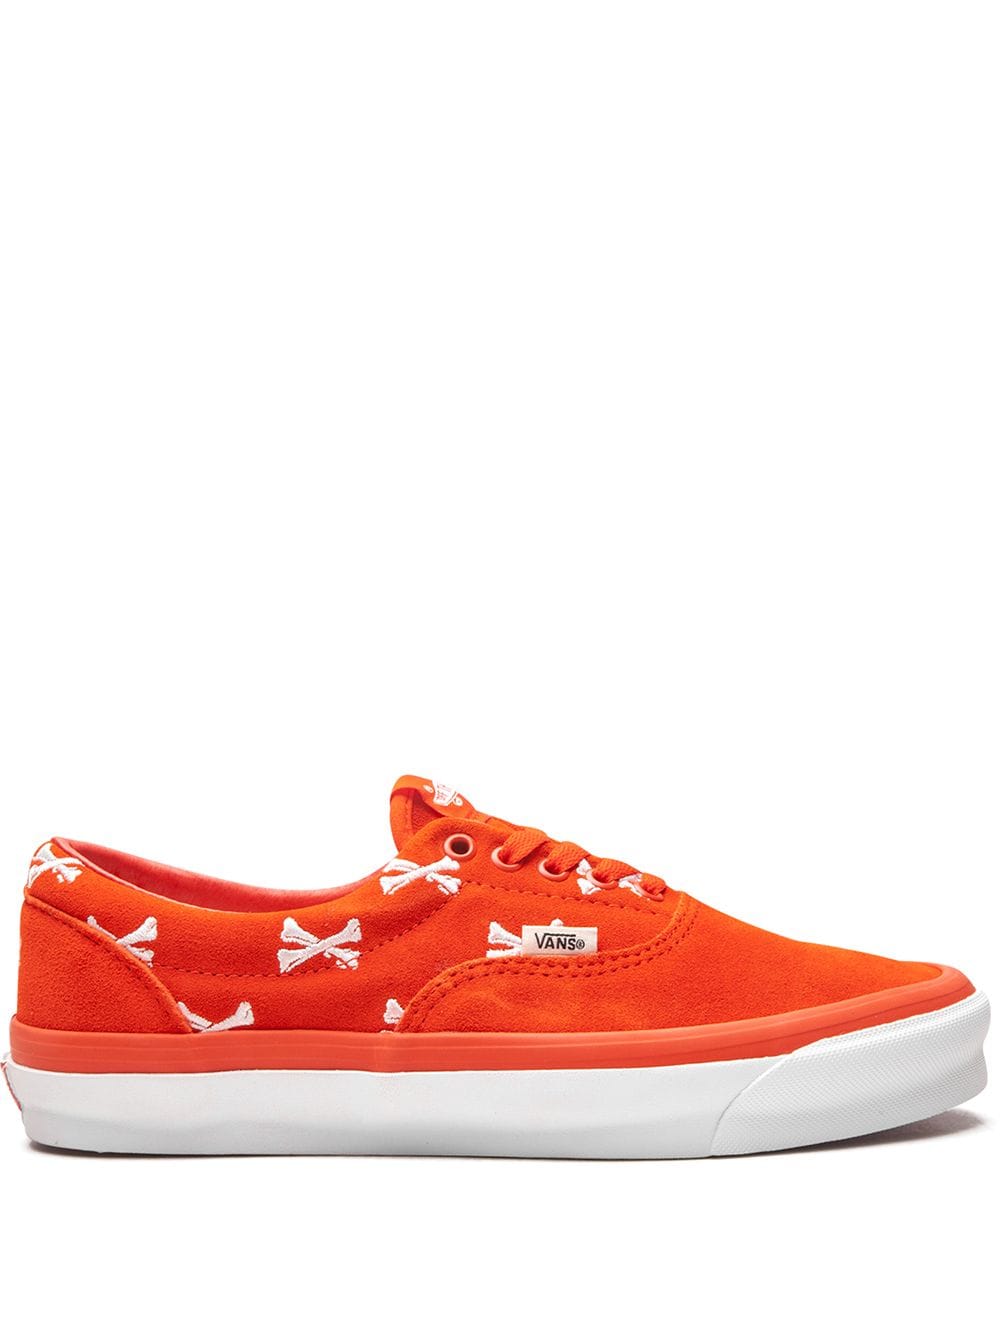 Vans x WTAPS OG Era LX "Bones - Orange" sneakers von Vans